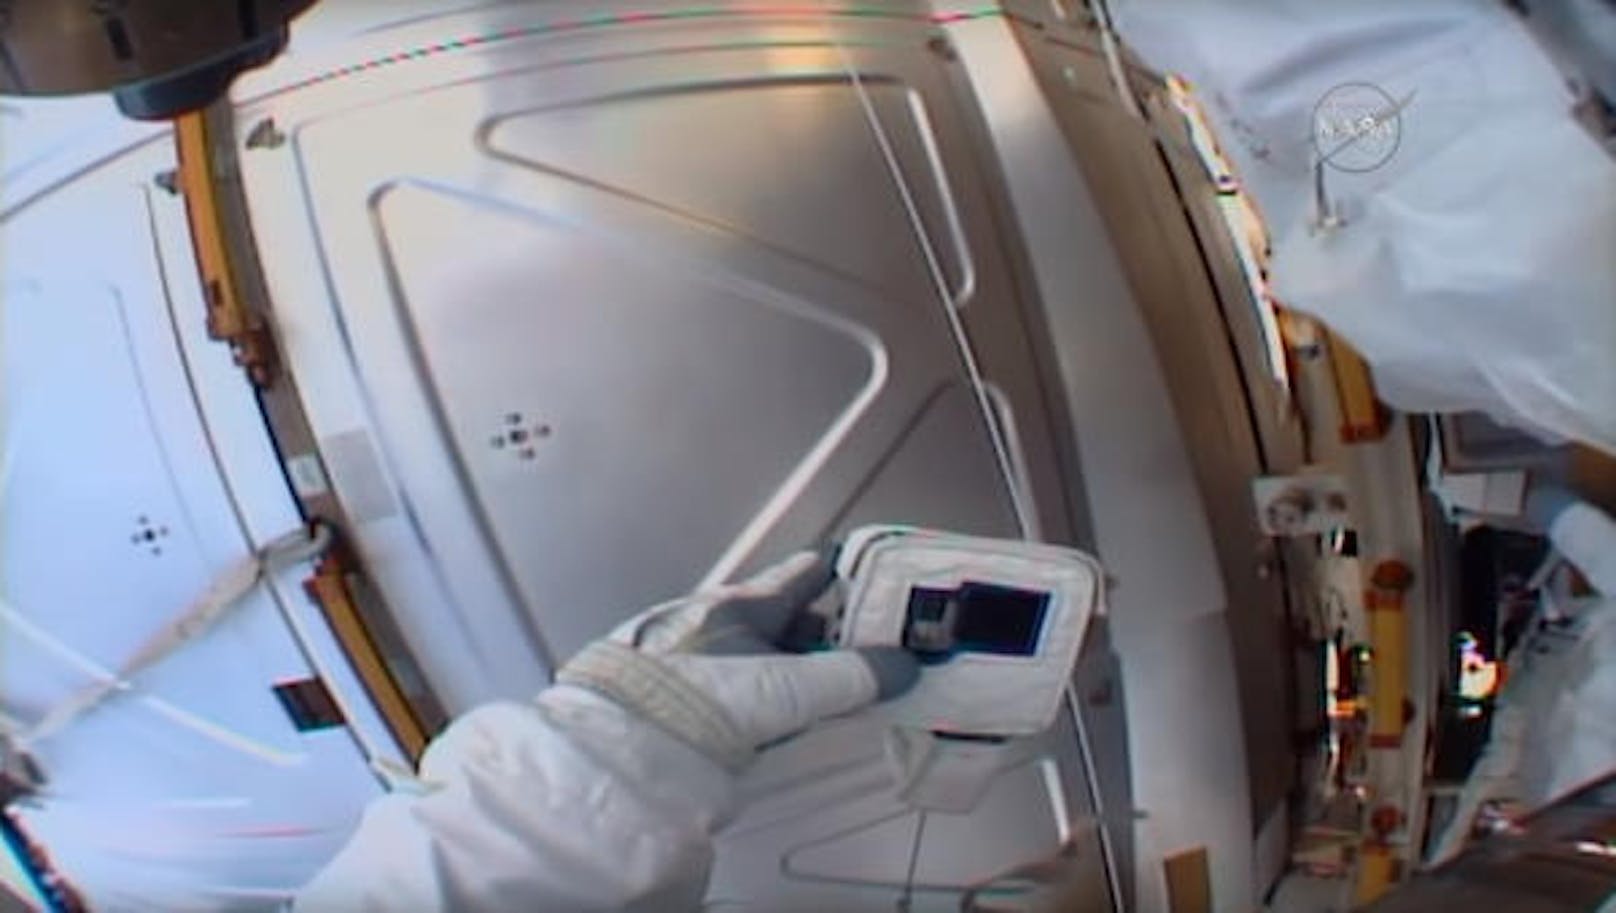 <b>18. Mai 2018:</b> Während eines Einsatzes auf der Internationalen Raumstation ISS hantierte einer von zwei Astronauten mit einer GoPro-Kamera. Dabei wirkte er ziemlich ratlos, wie auch im Live-Stream zu erkennen war. Zu seinen Kollegen in Houston sagte er: "Da steht keine SD, brauche ich das, um Aufnahmen machen zu können?"